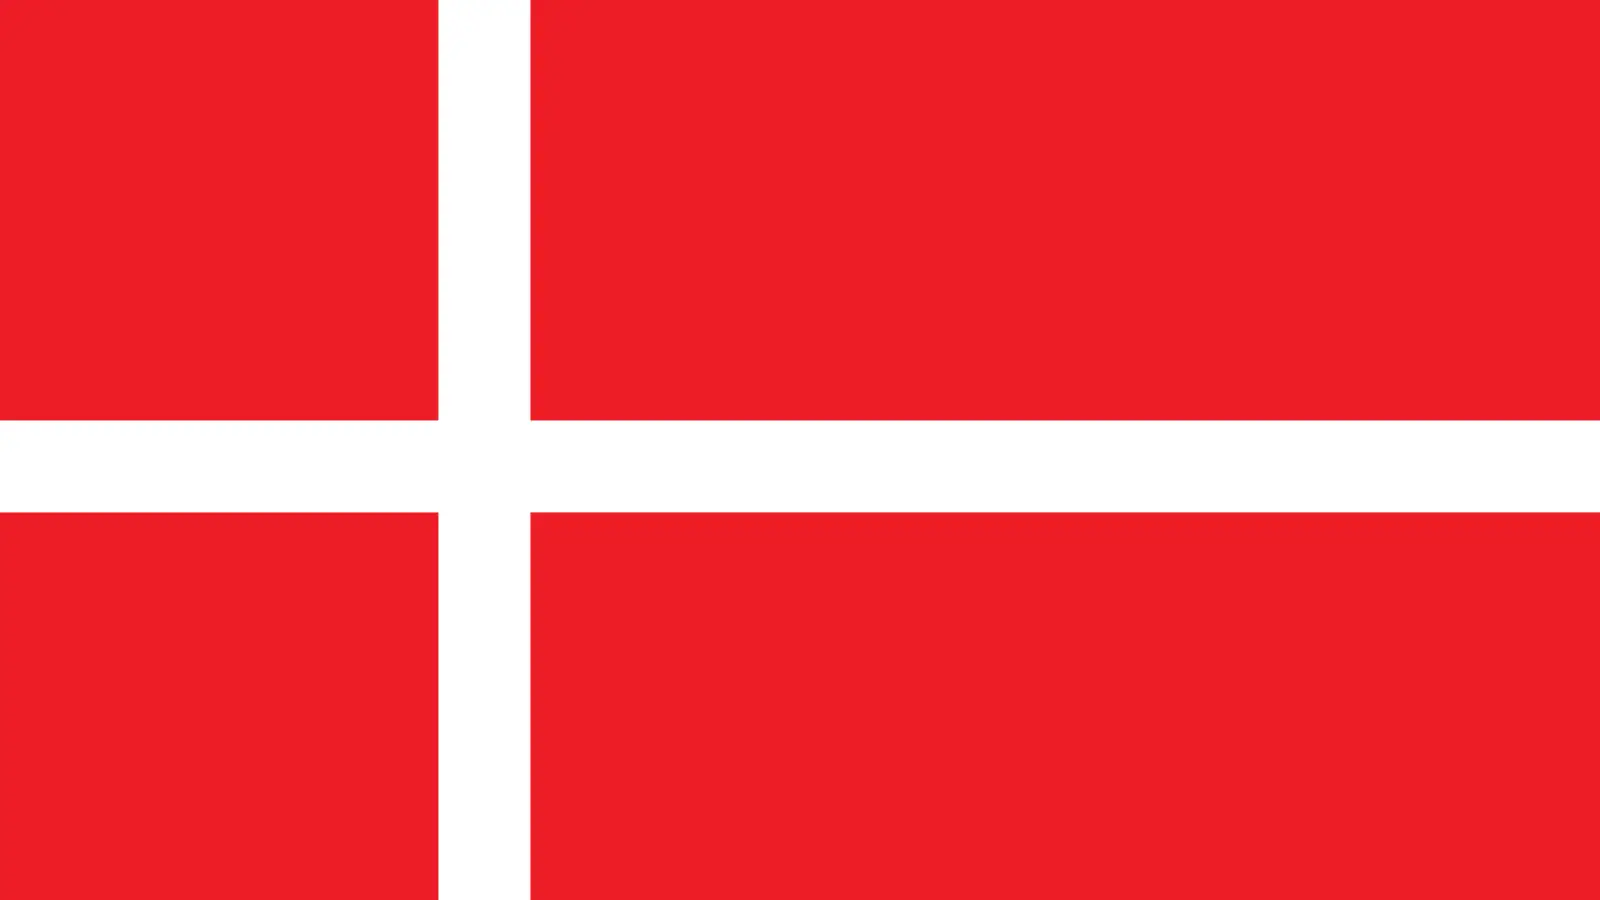 Dinamarca limitará la emisión de visas para ciudadanos rusos